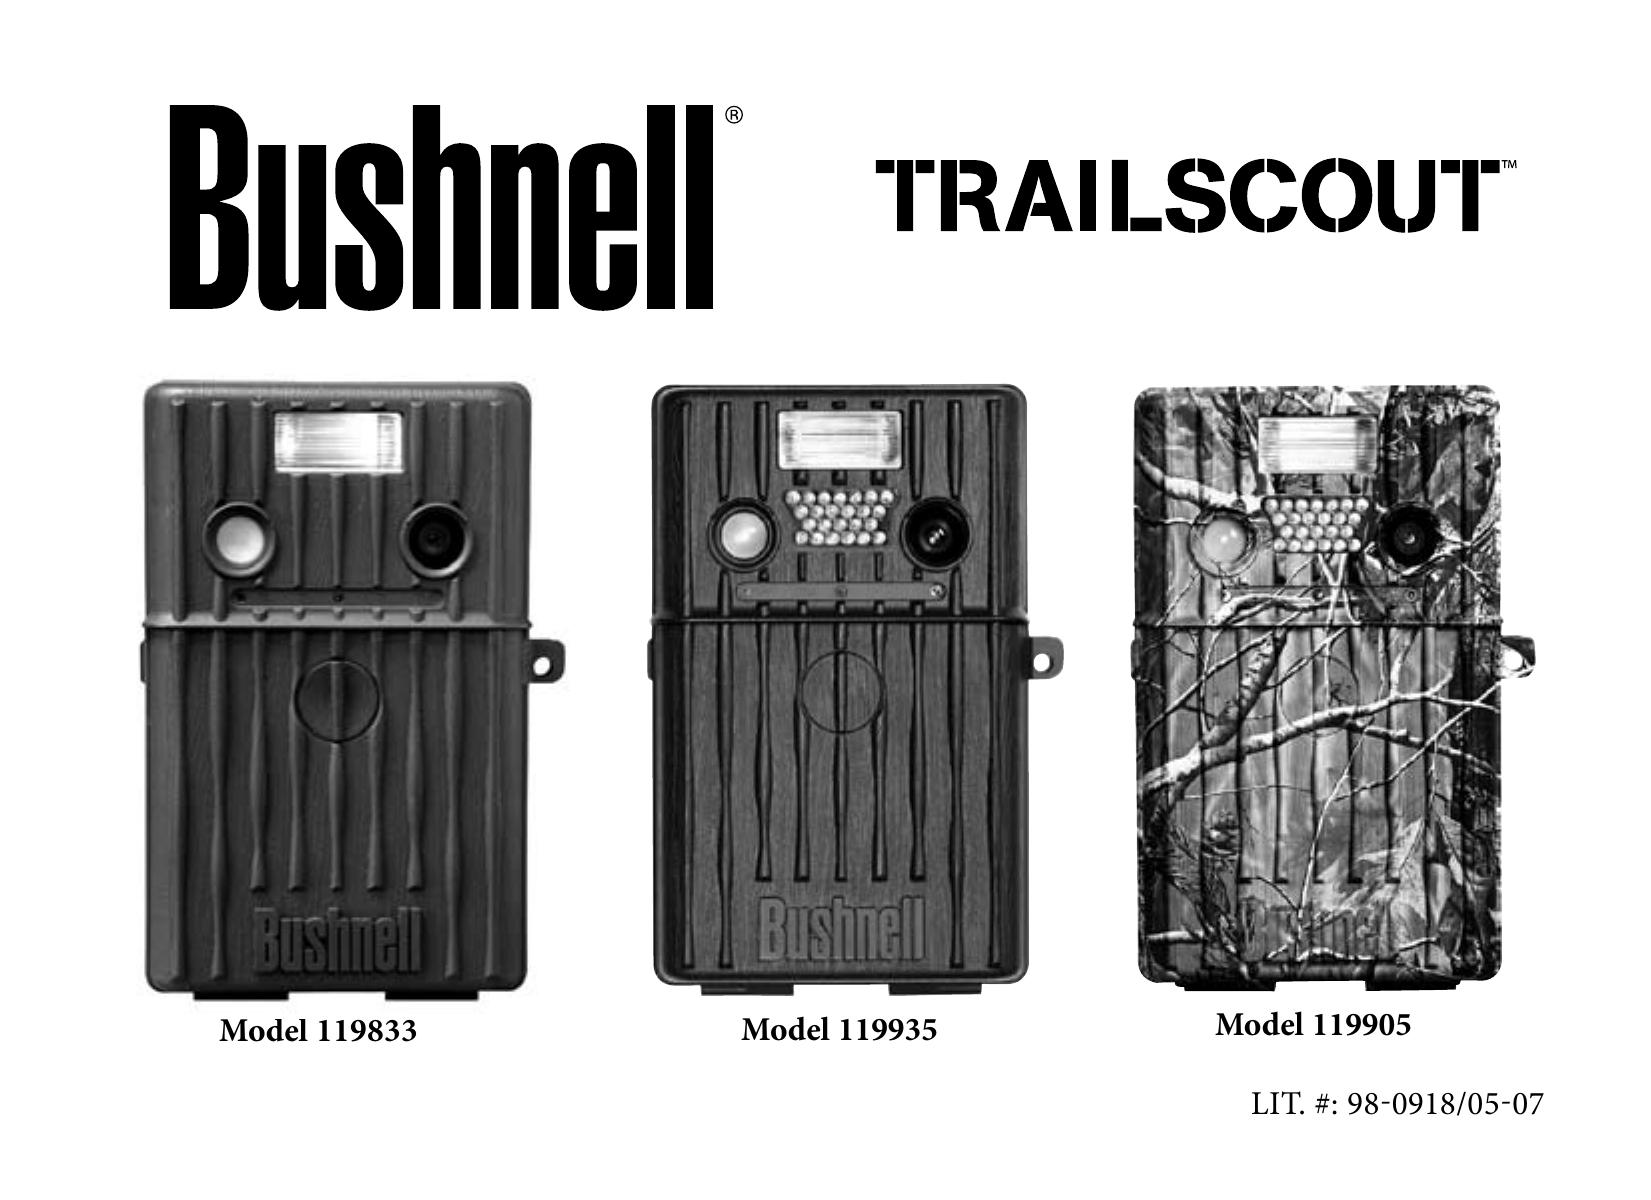 Bushnell 119905 Digital Camera User Manual